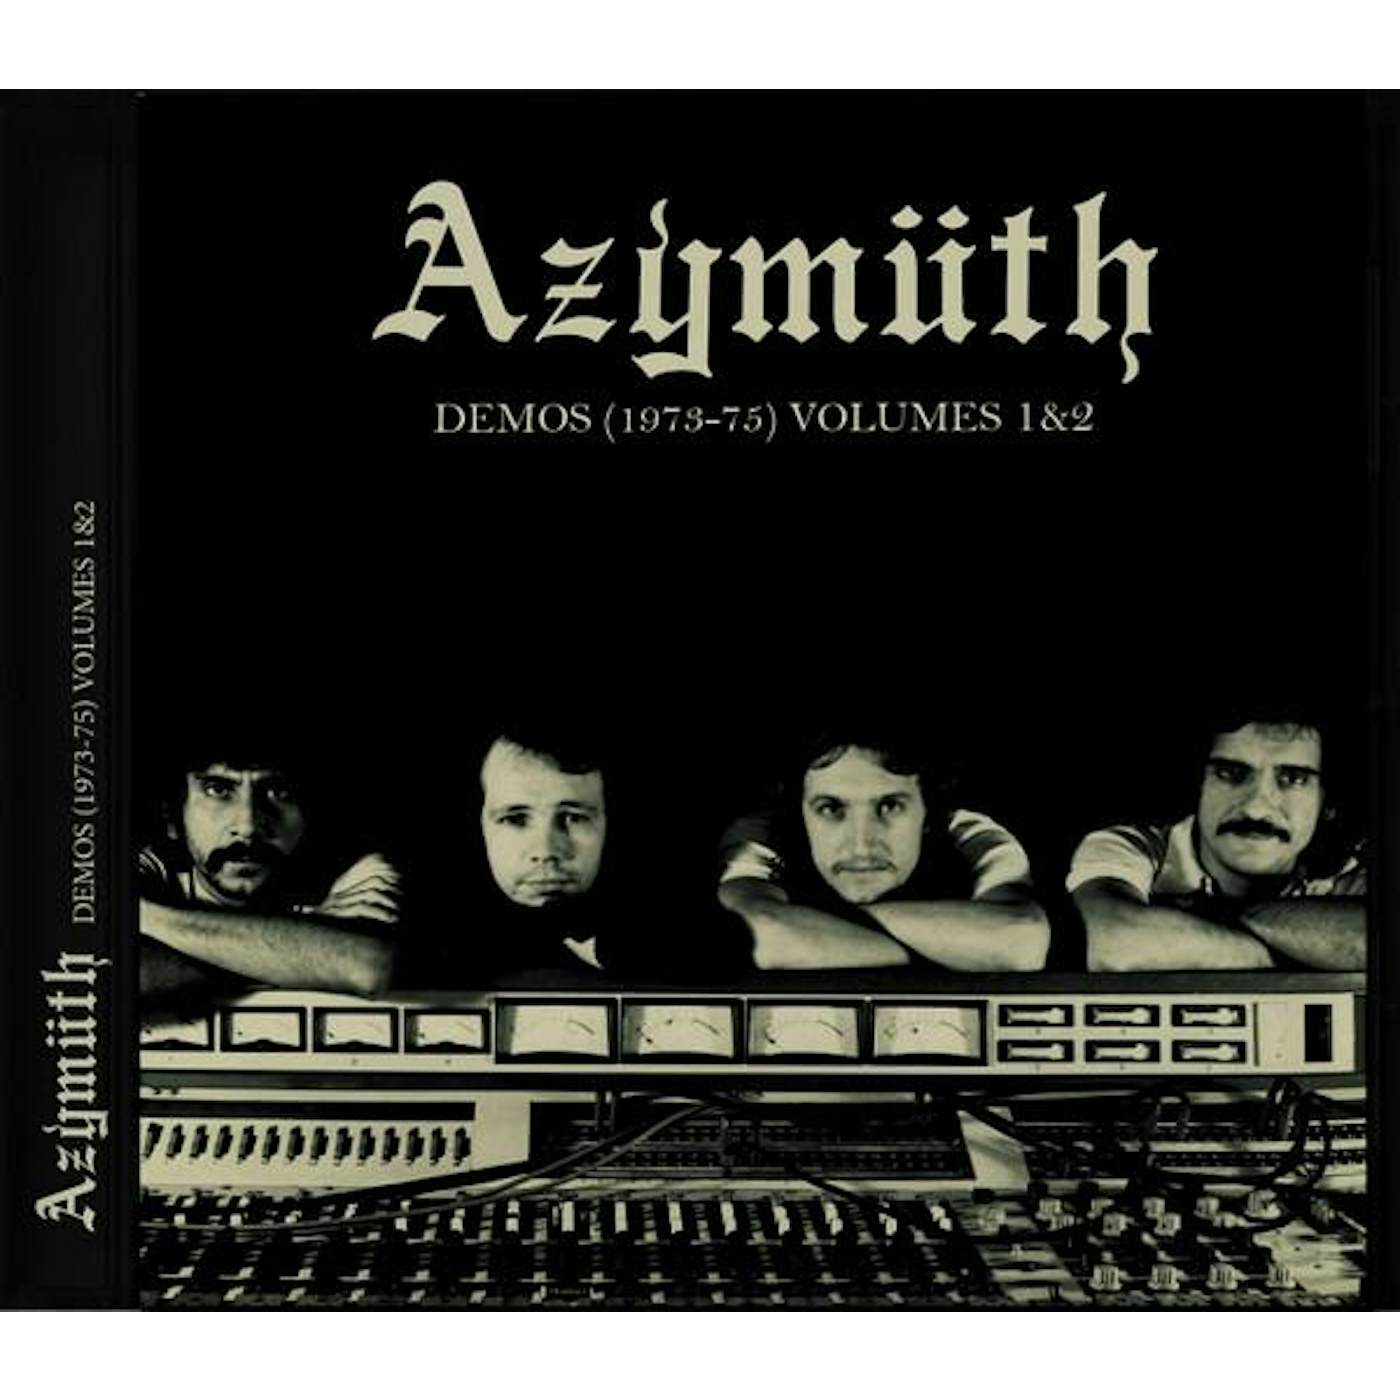 Azymuth DEMOS (1973-75) VOL. 1 & 2 CD